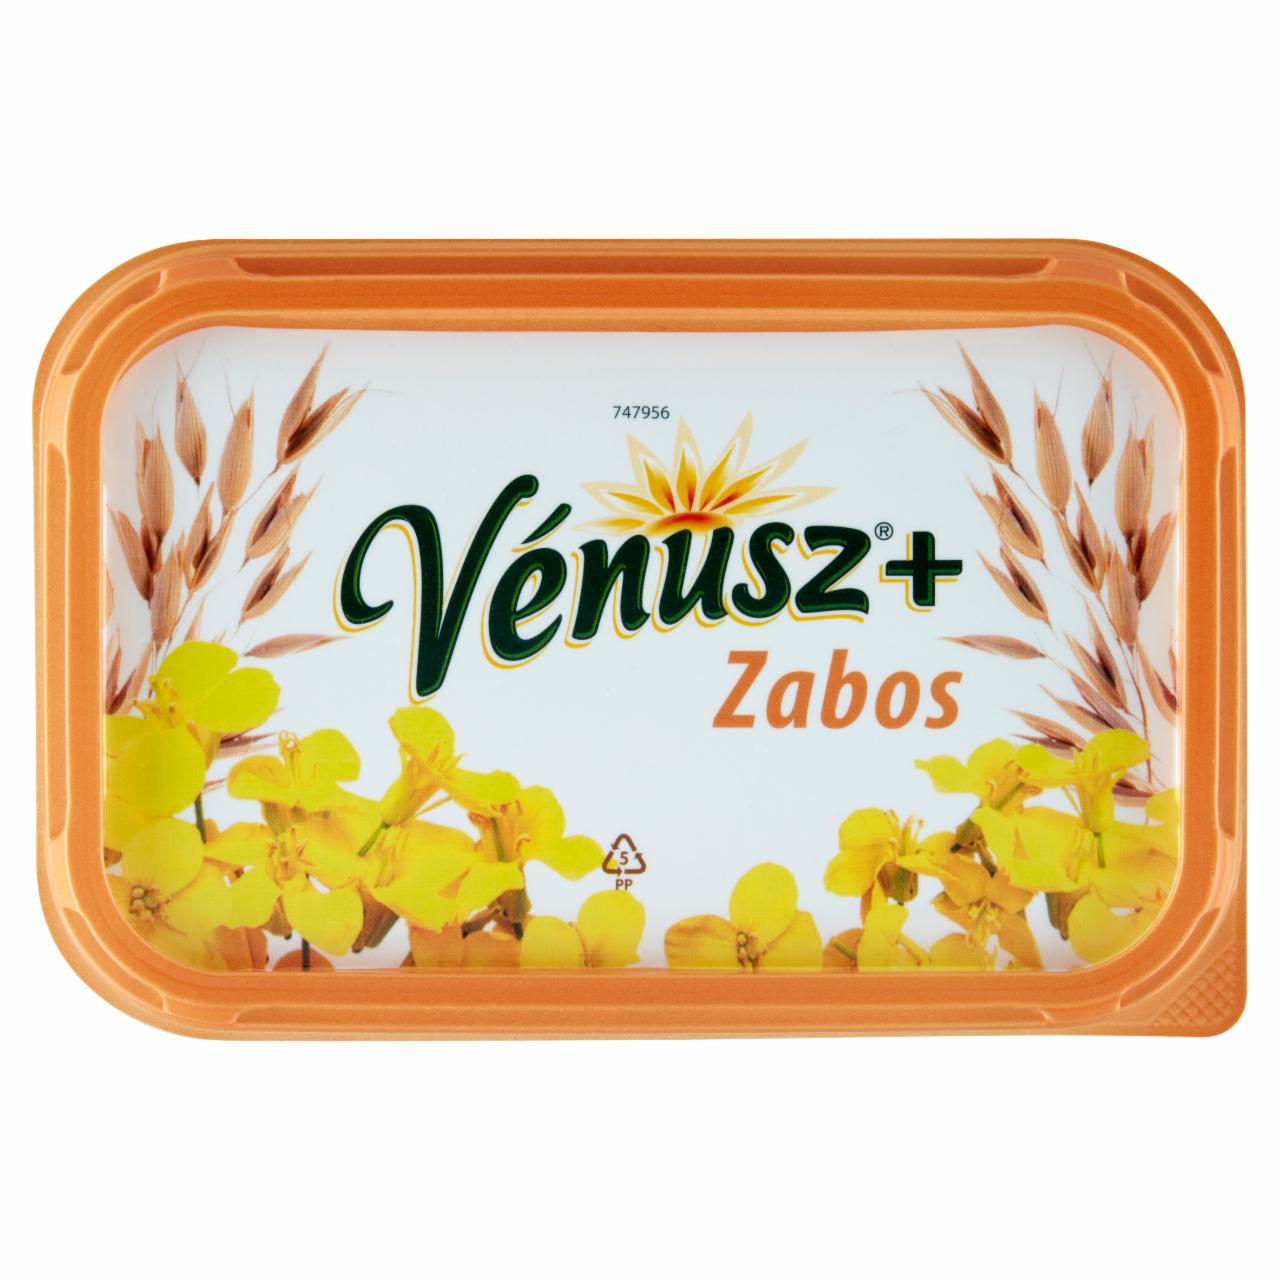 Képek - Zabos 60% zsírtartalmú margarin Vénusz+